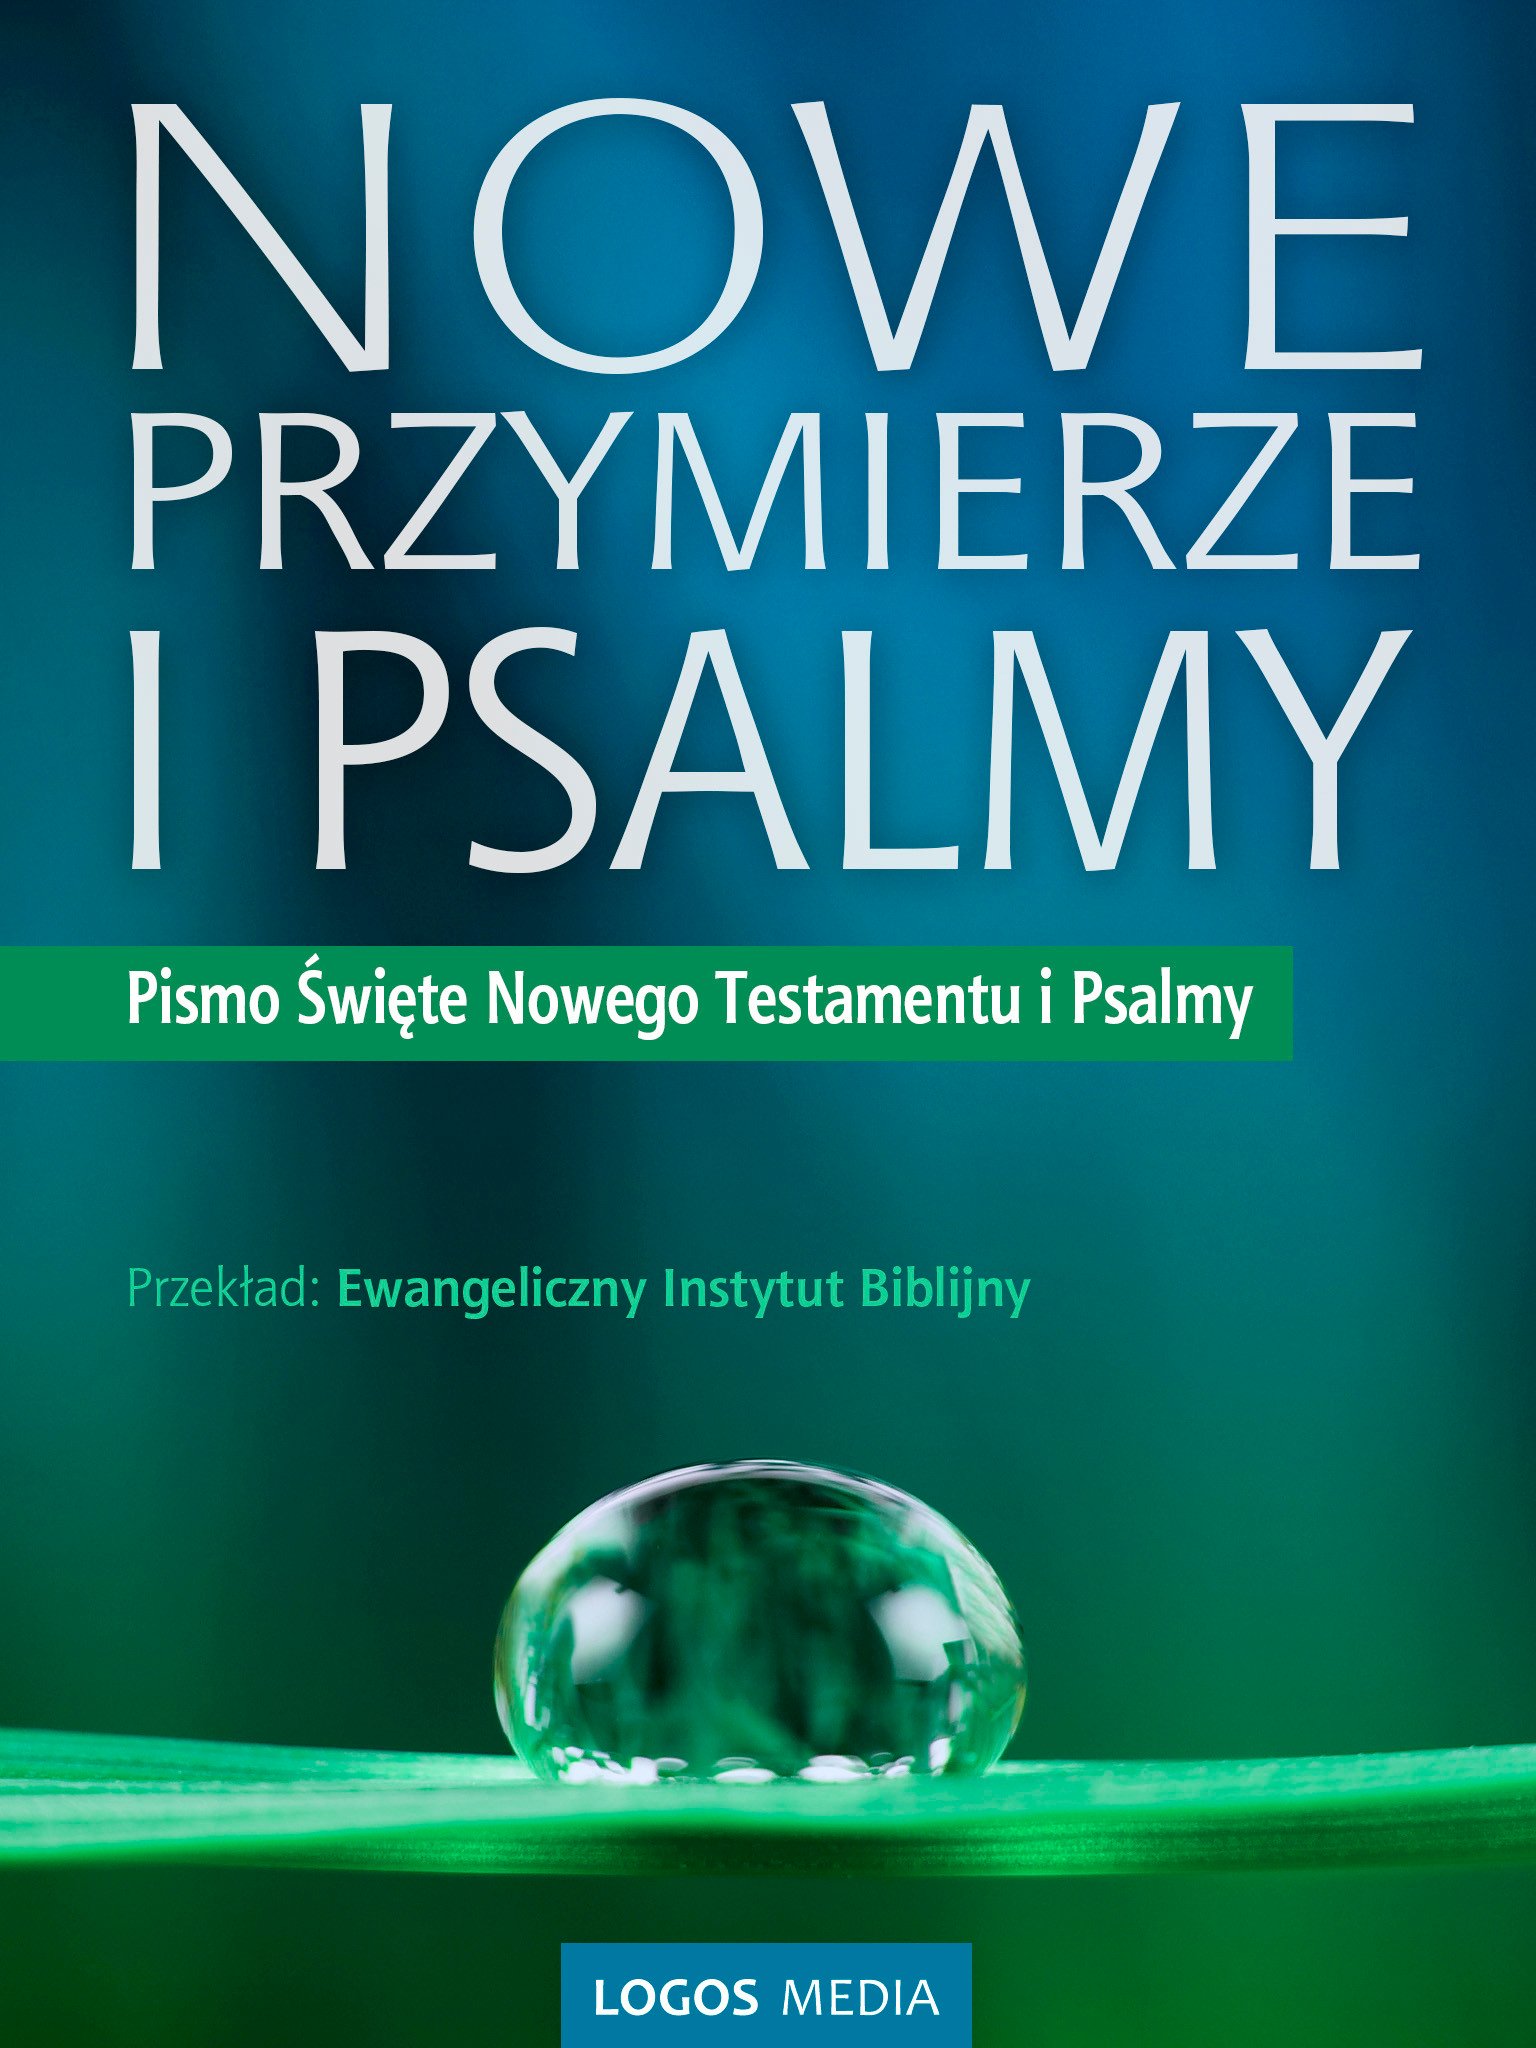 Okładka:Nowe Przymierze i Psalmy, Pismo Święte Nowego Testamentu i Psalmy 